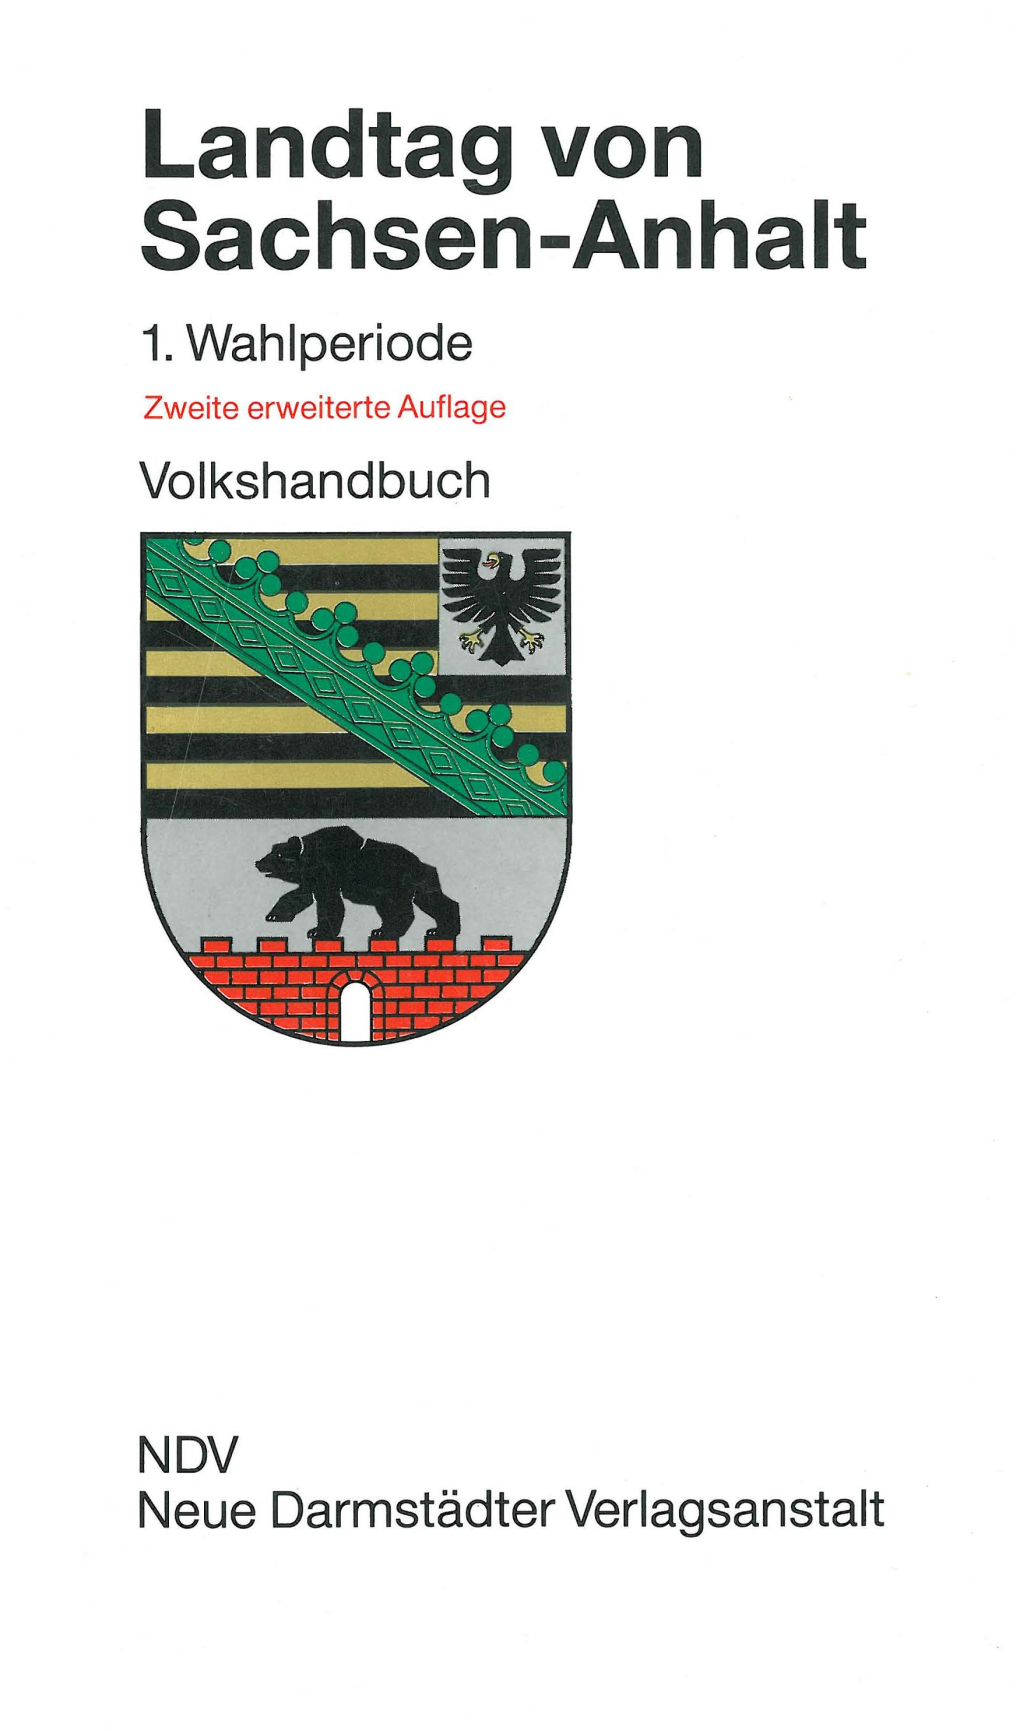 Landtag Von Sachsen-Anhalt, 1. Wahlperiode, Volkshandbuch, 2